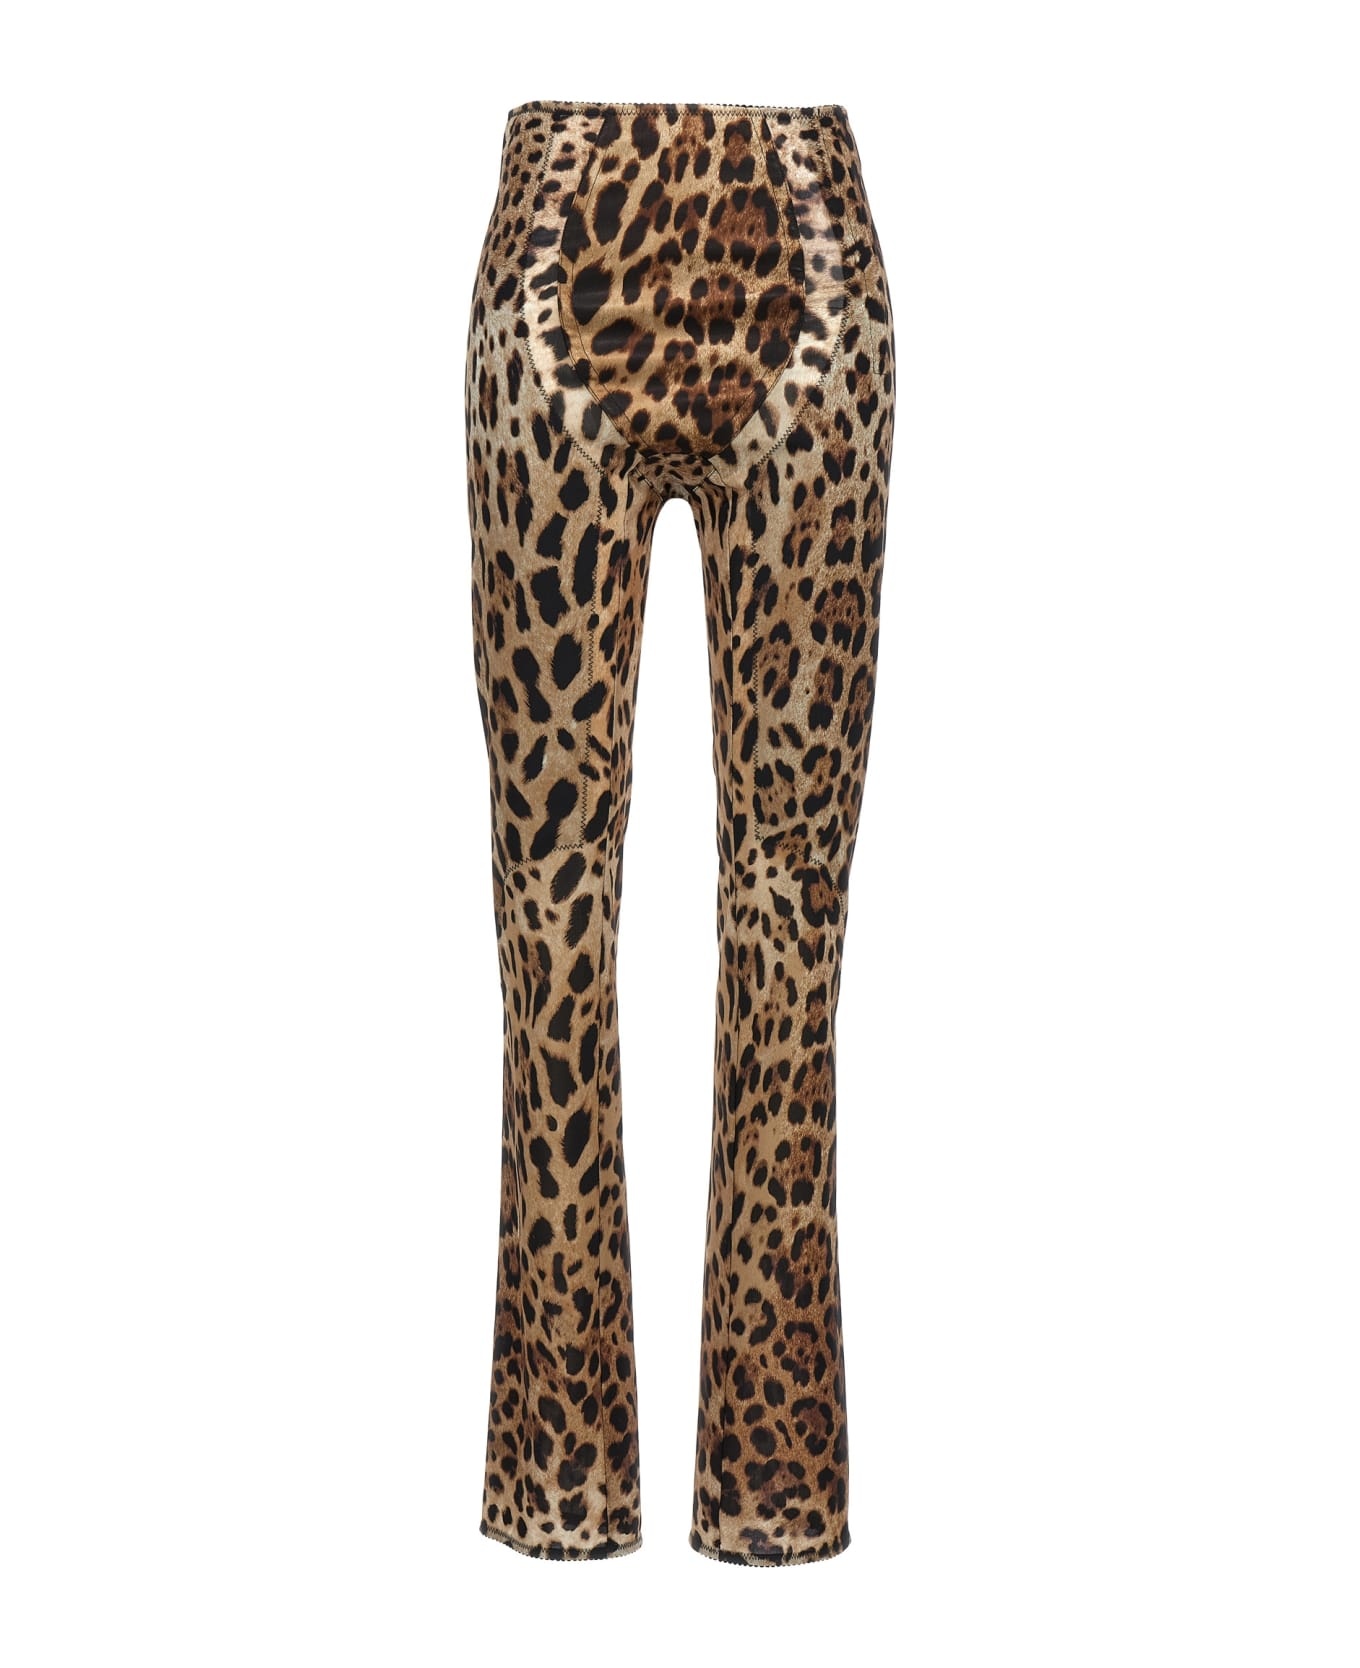 X Kim Leopard Pants - 1